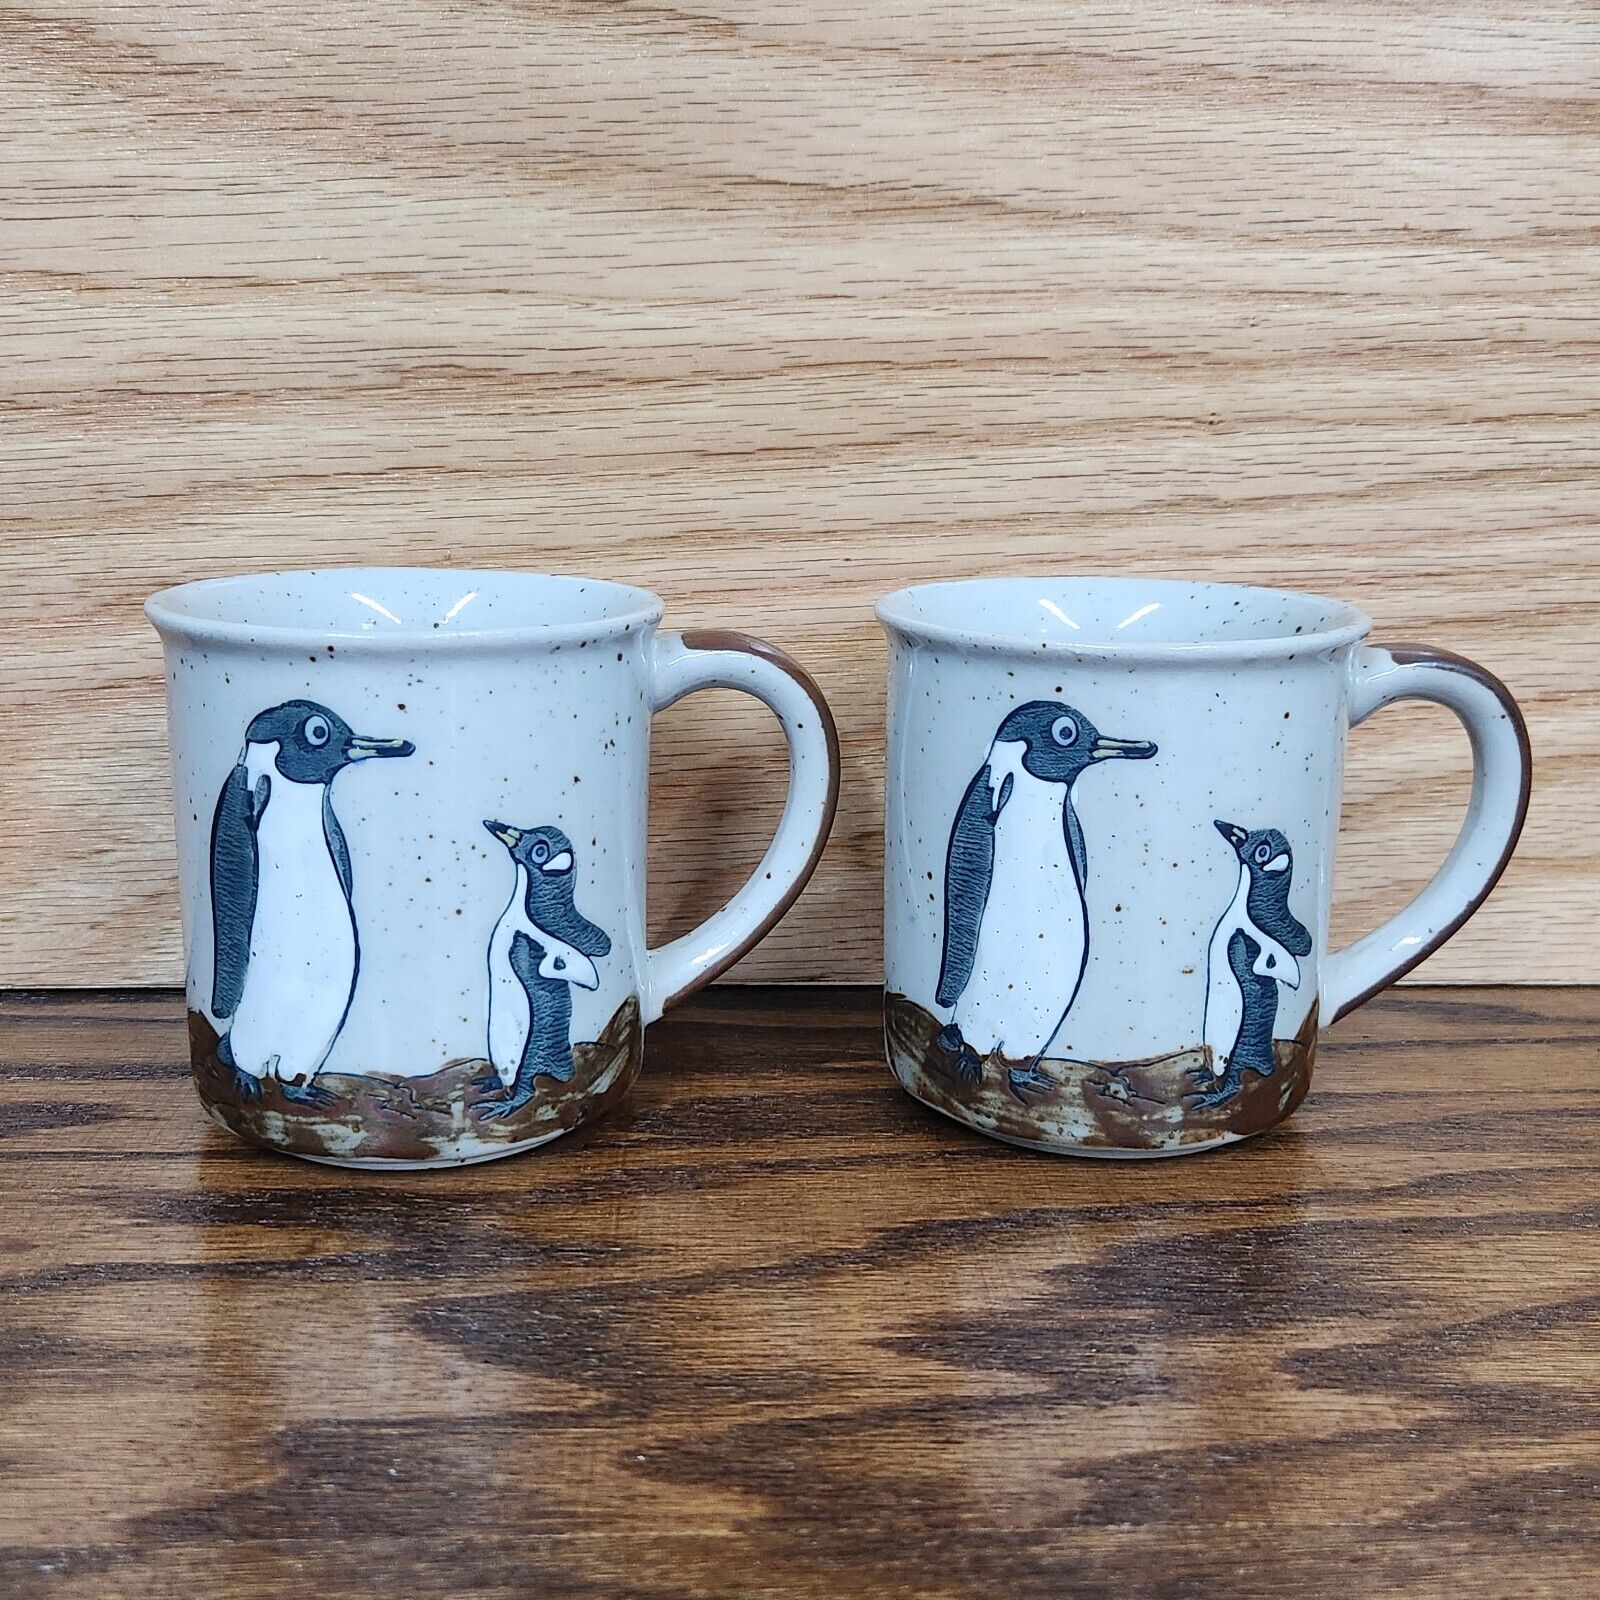 Vintage Penguin Pottery Coffee Mug Cup Set of 2 Otagiri? 10 oz